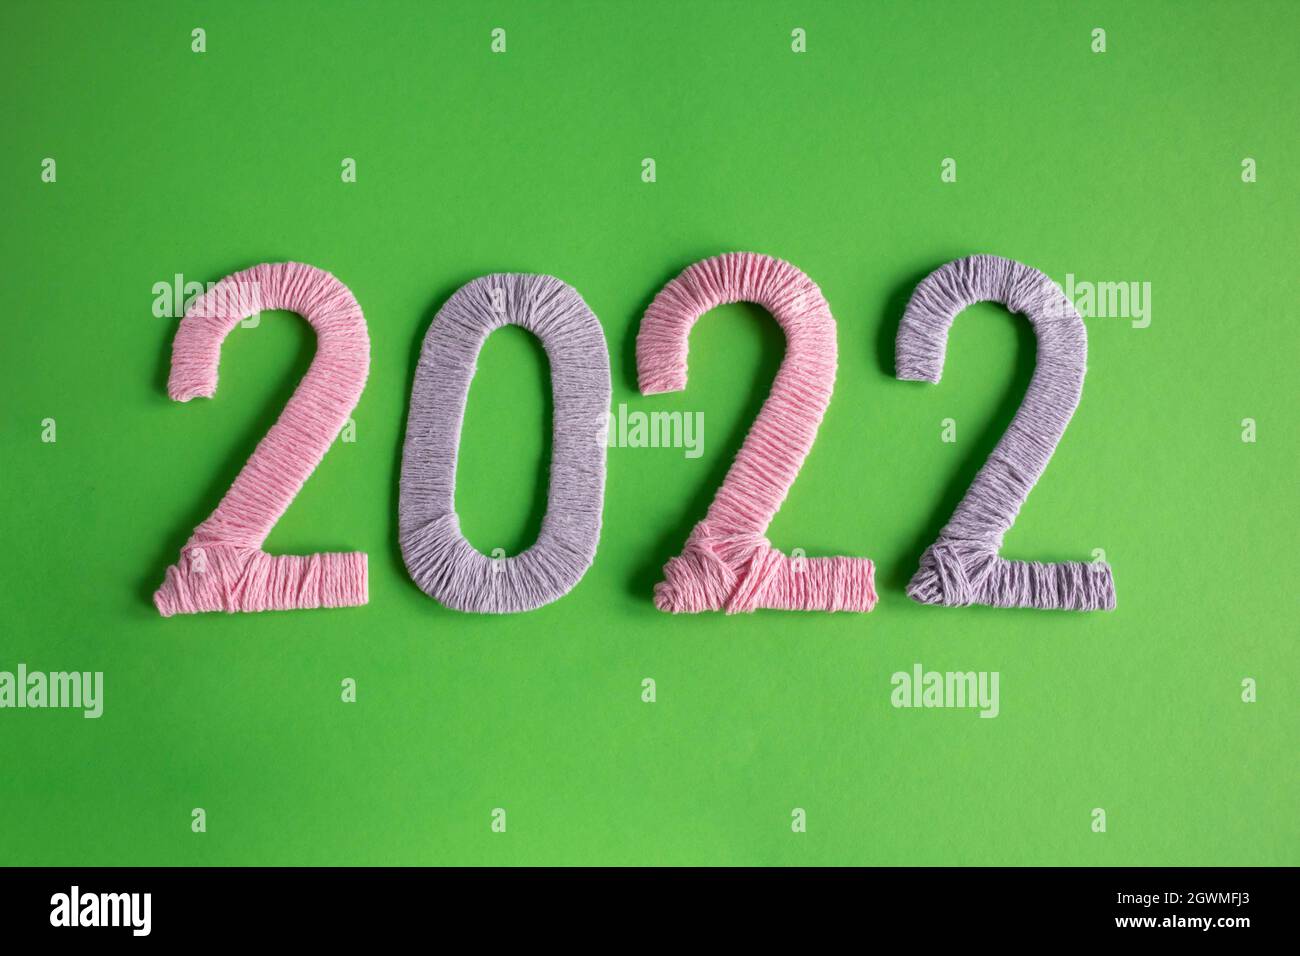 Số 2022 được làm từ sợi màu hồng và tím trên nền xanh sẽ mang đến cho bạn một cảm giác ấm áp và mộc mạc của Tết truyền thống. Hãy cùng chiêm ngưỡng những hình ảnh tuyệt đẹp này và tràn đầy niềm vui đón chào năm mới.